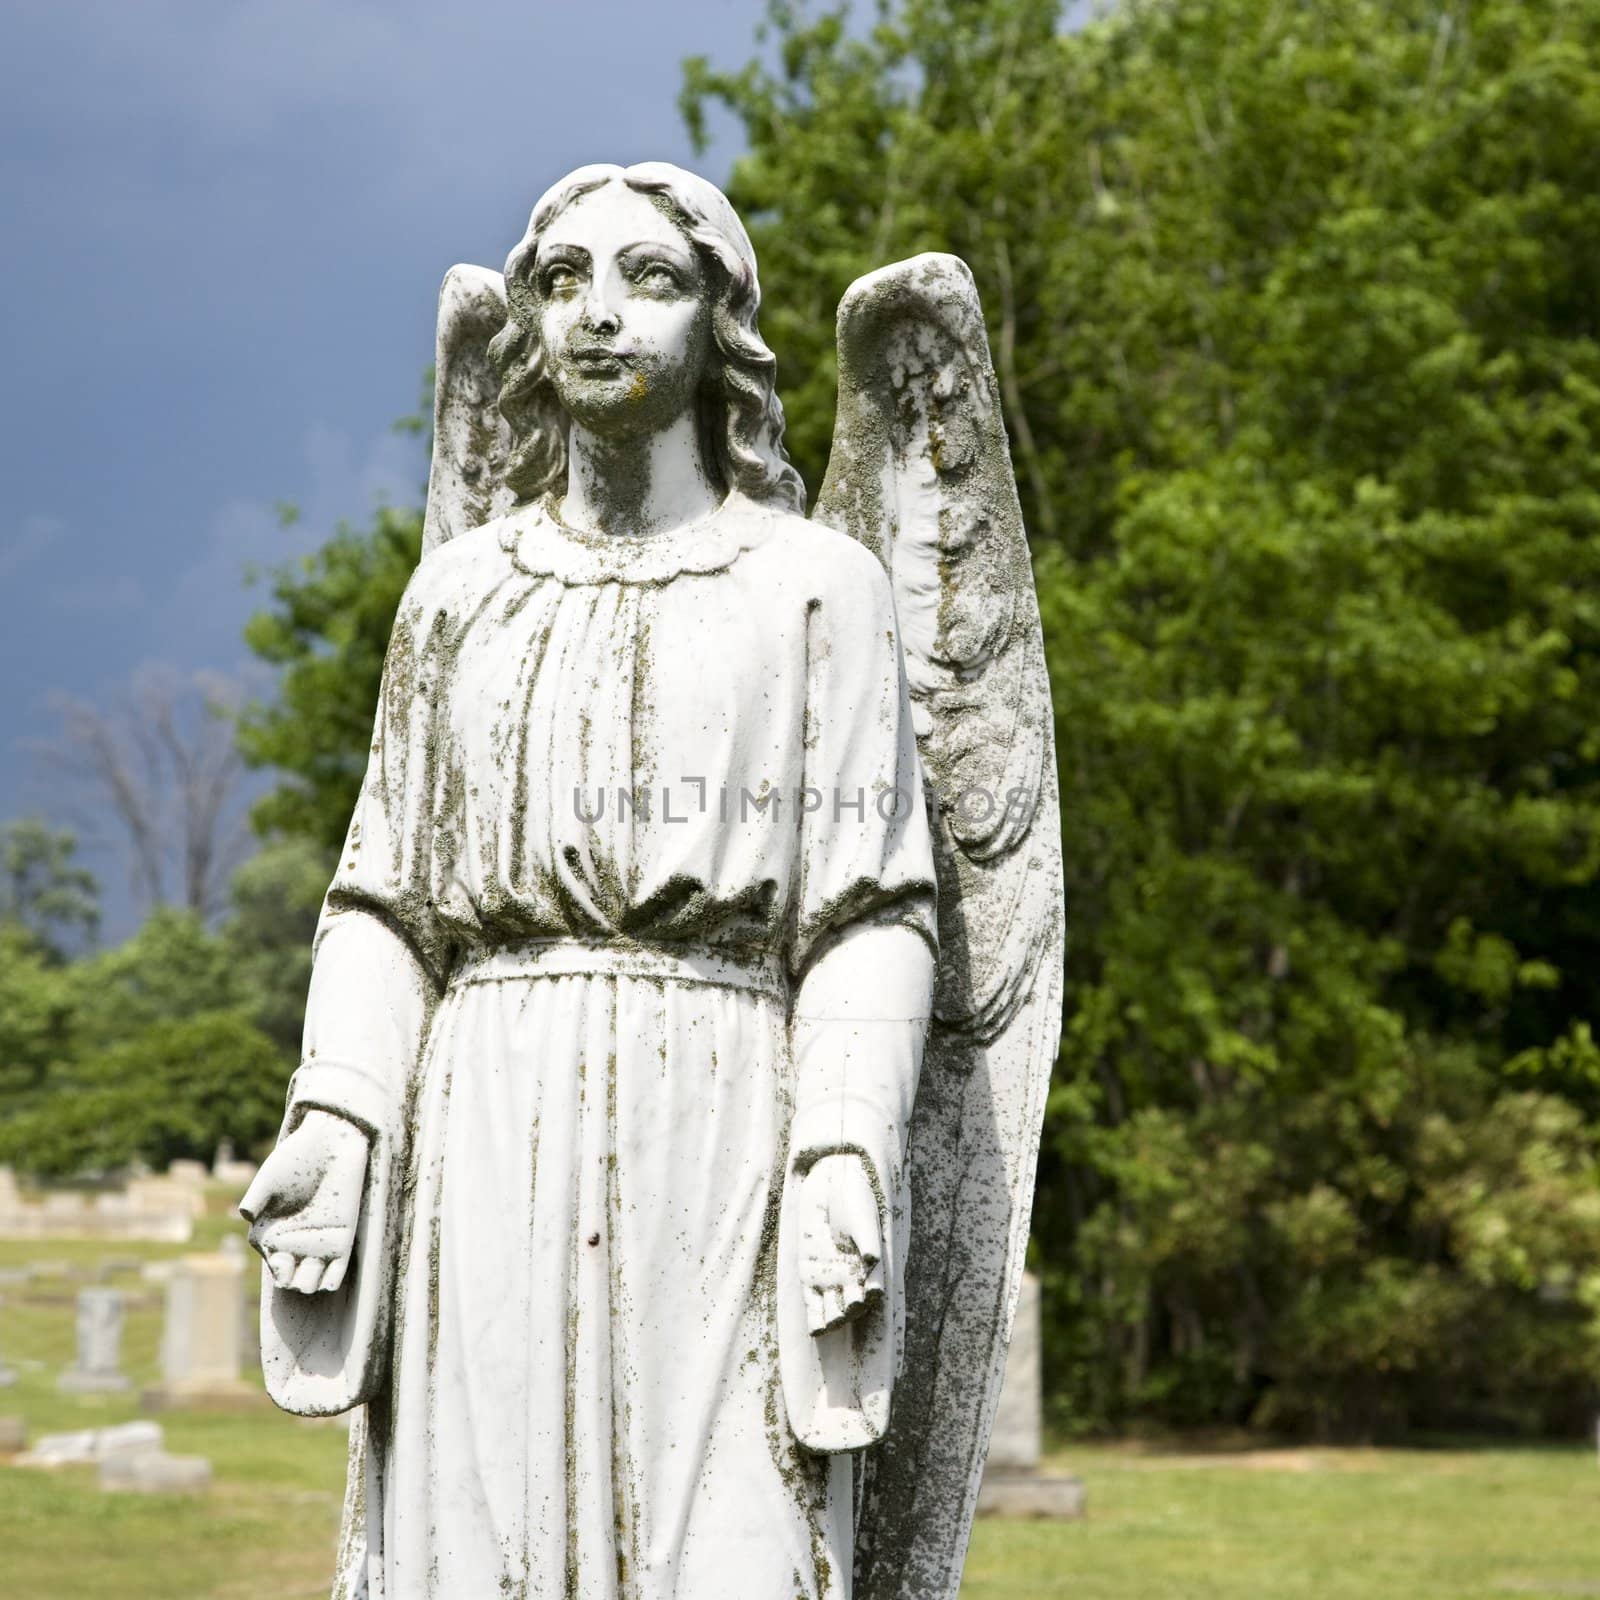 Guardian angel statue in graveyard. by iofoto